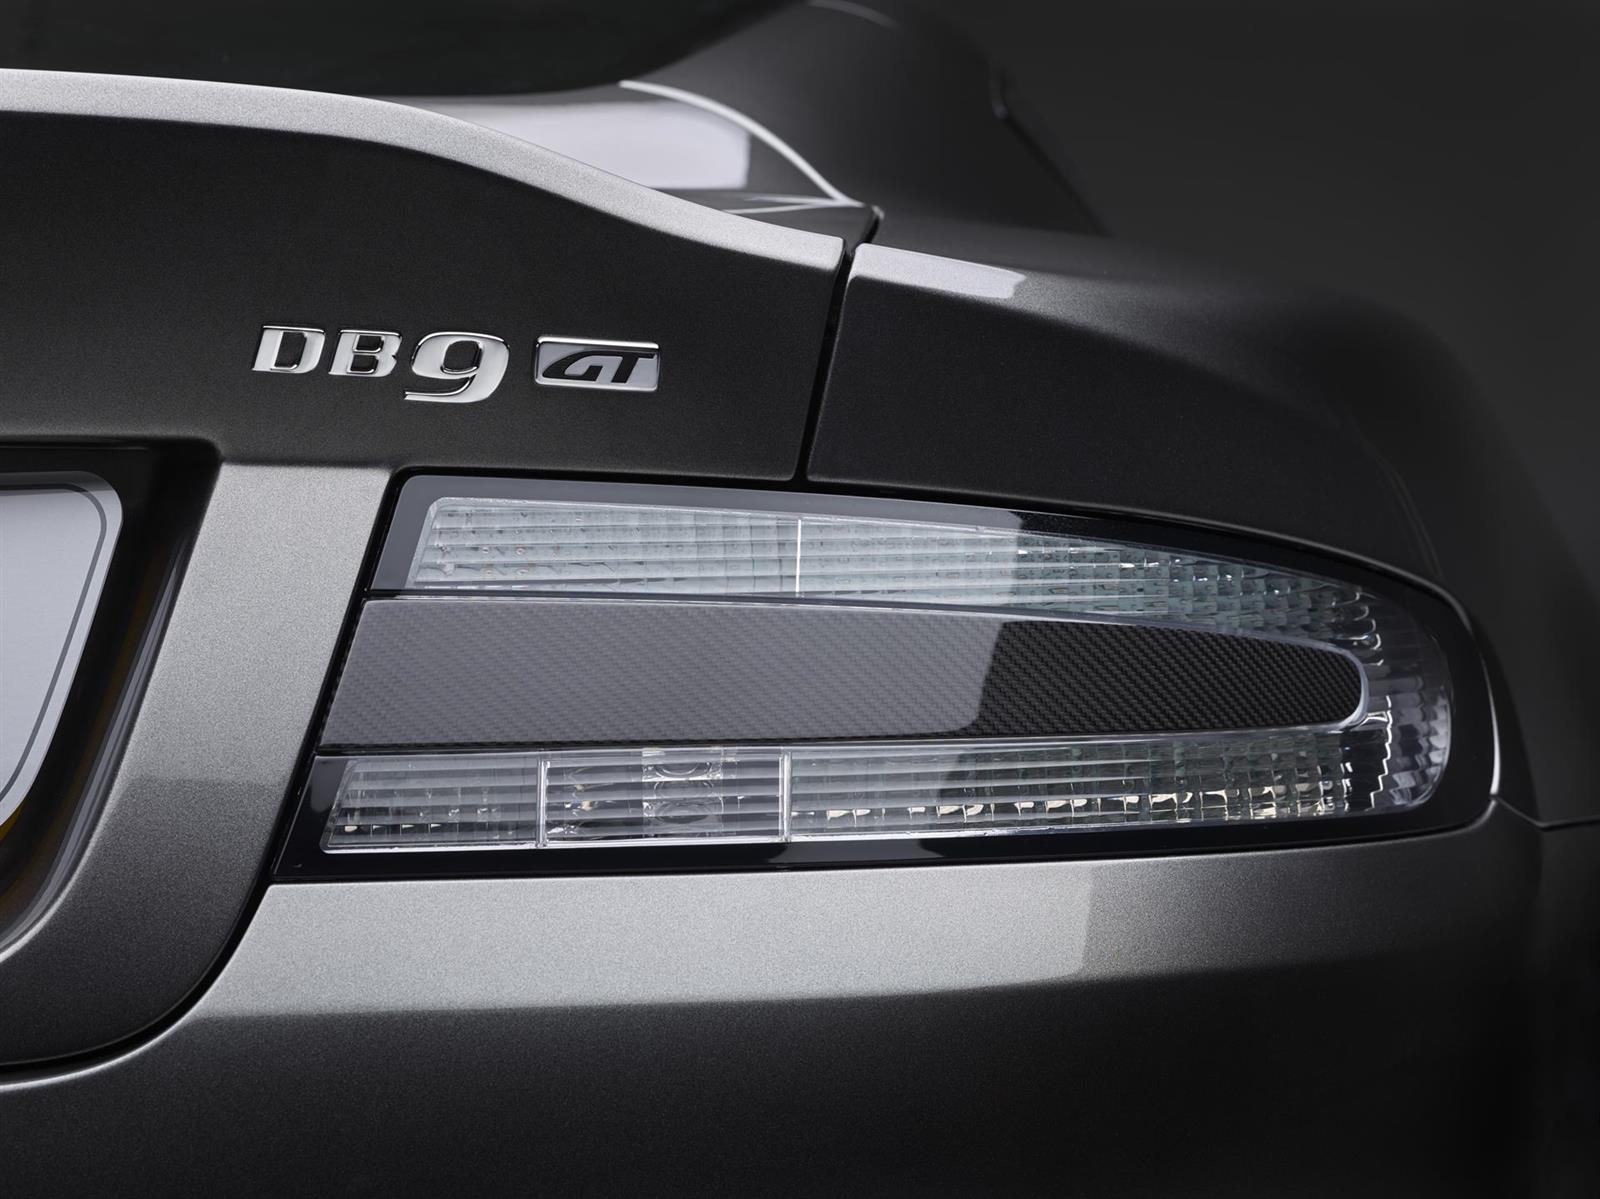 2015 Aston Martin DB9 GT